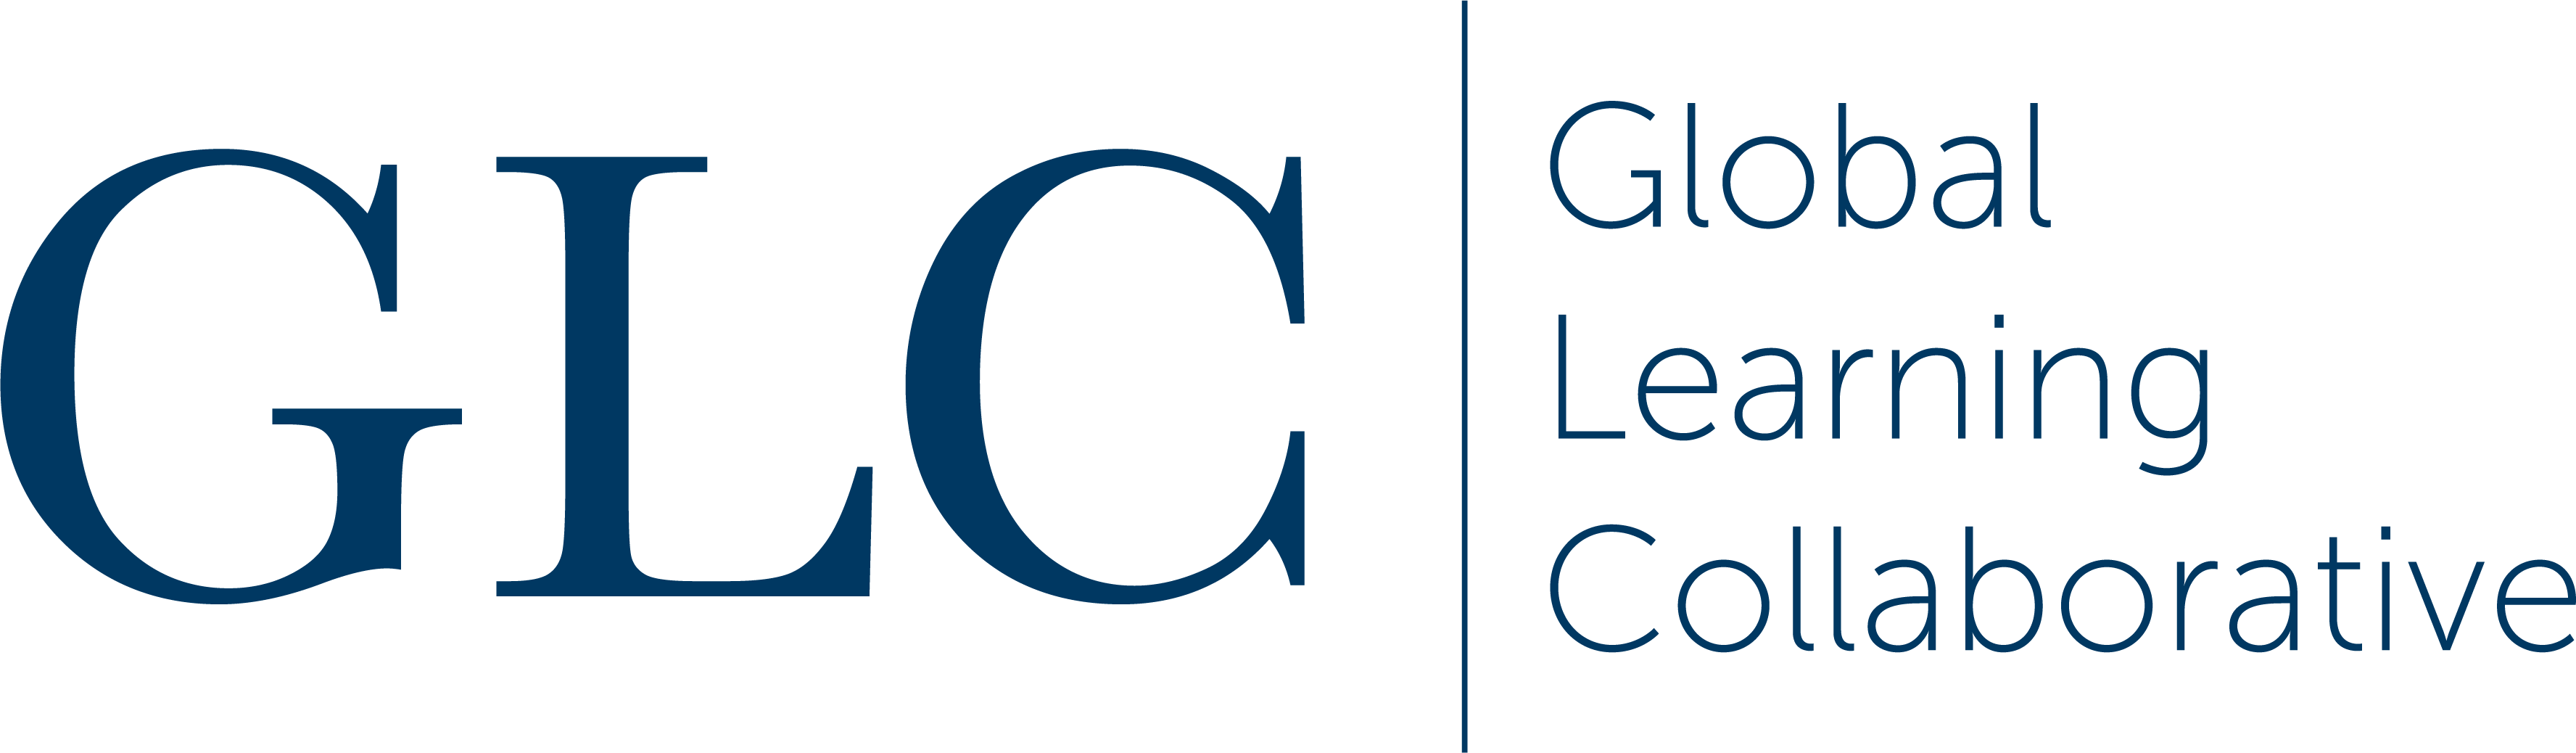 GLC_logo